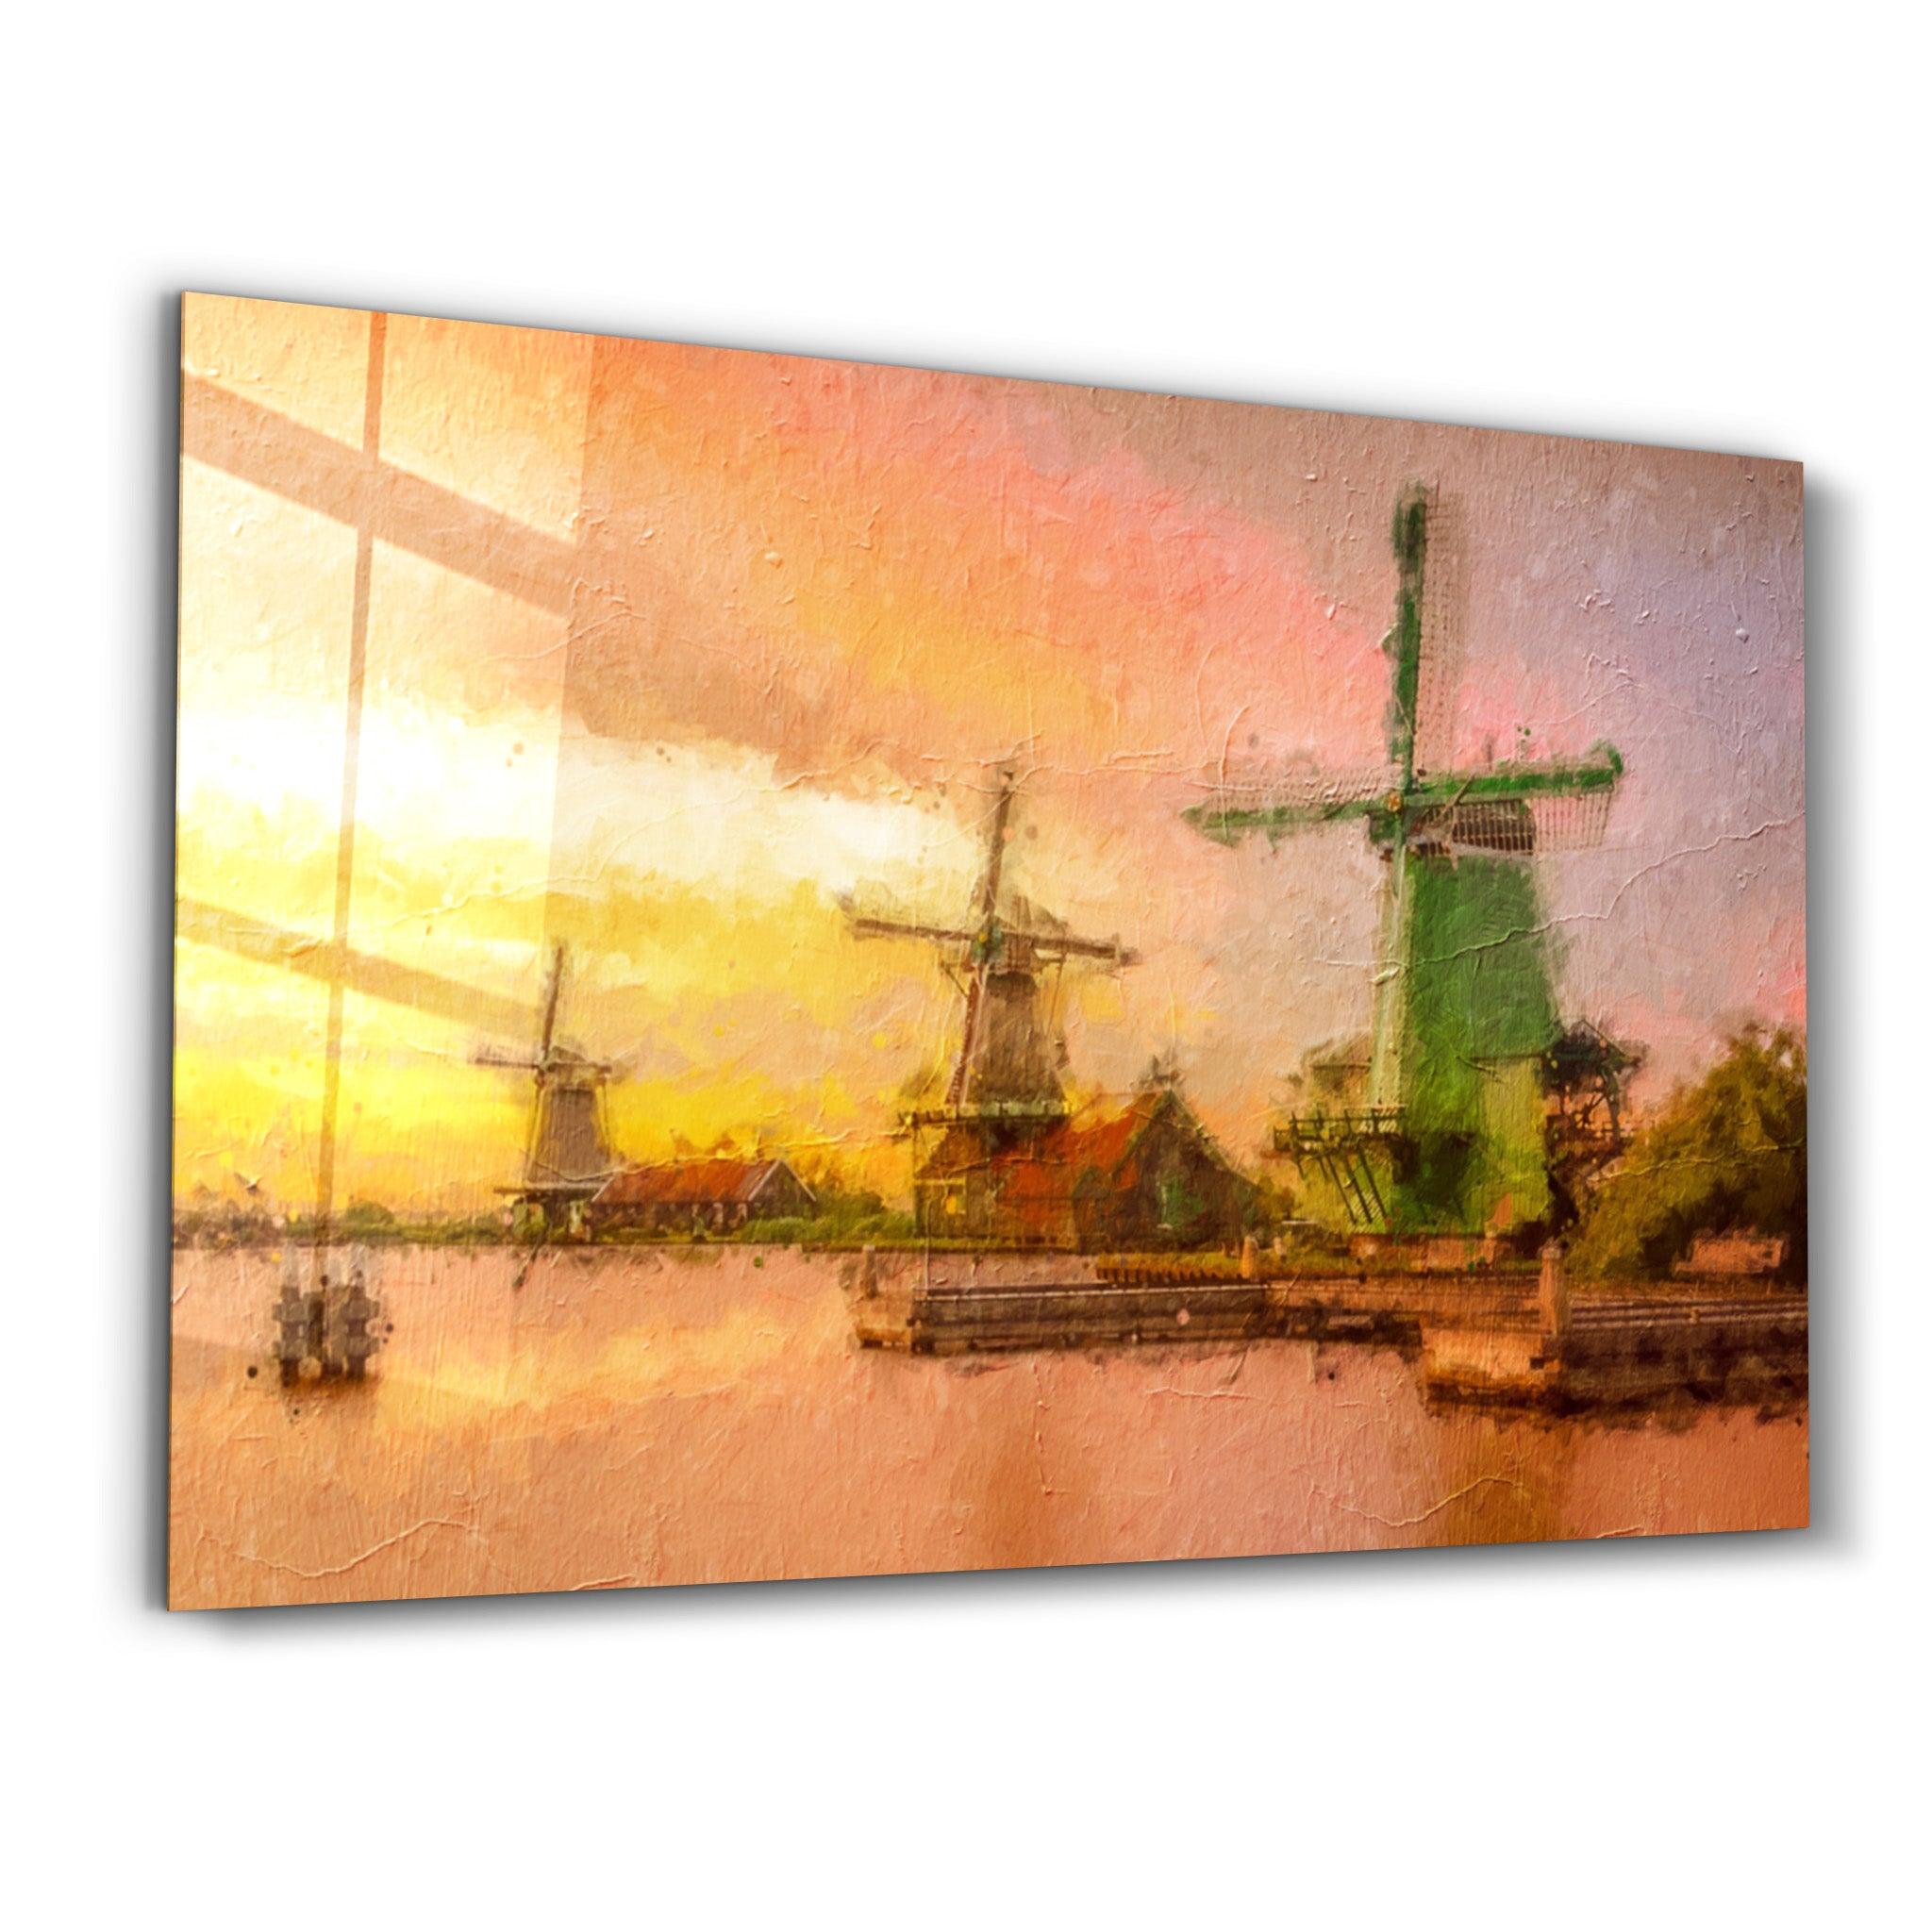 Windmills | Glass Wall Art - ArtDesigna Glass Printing Wall Art